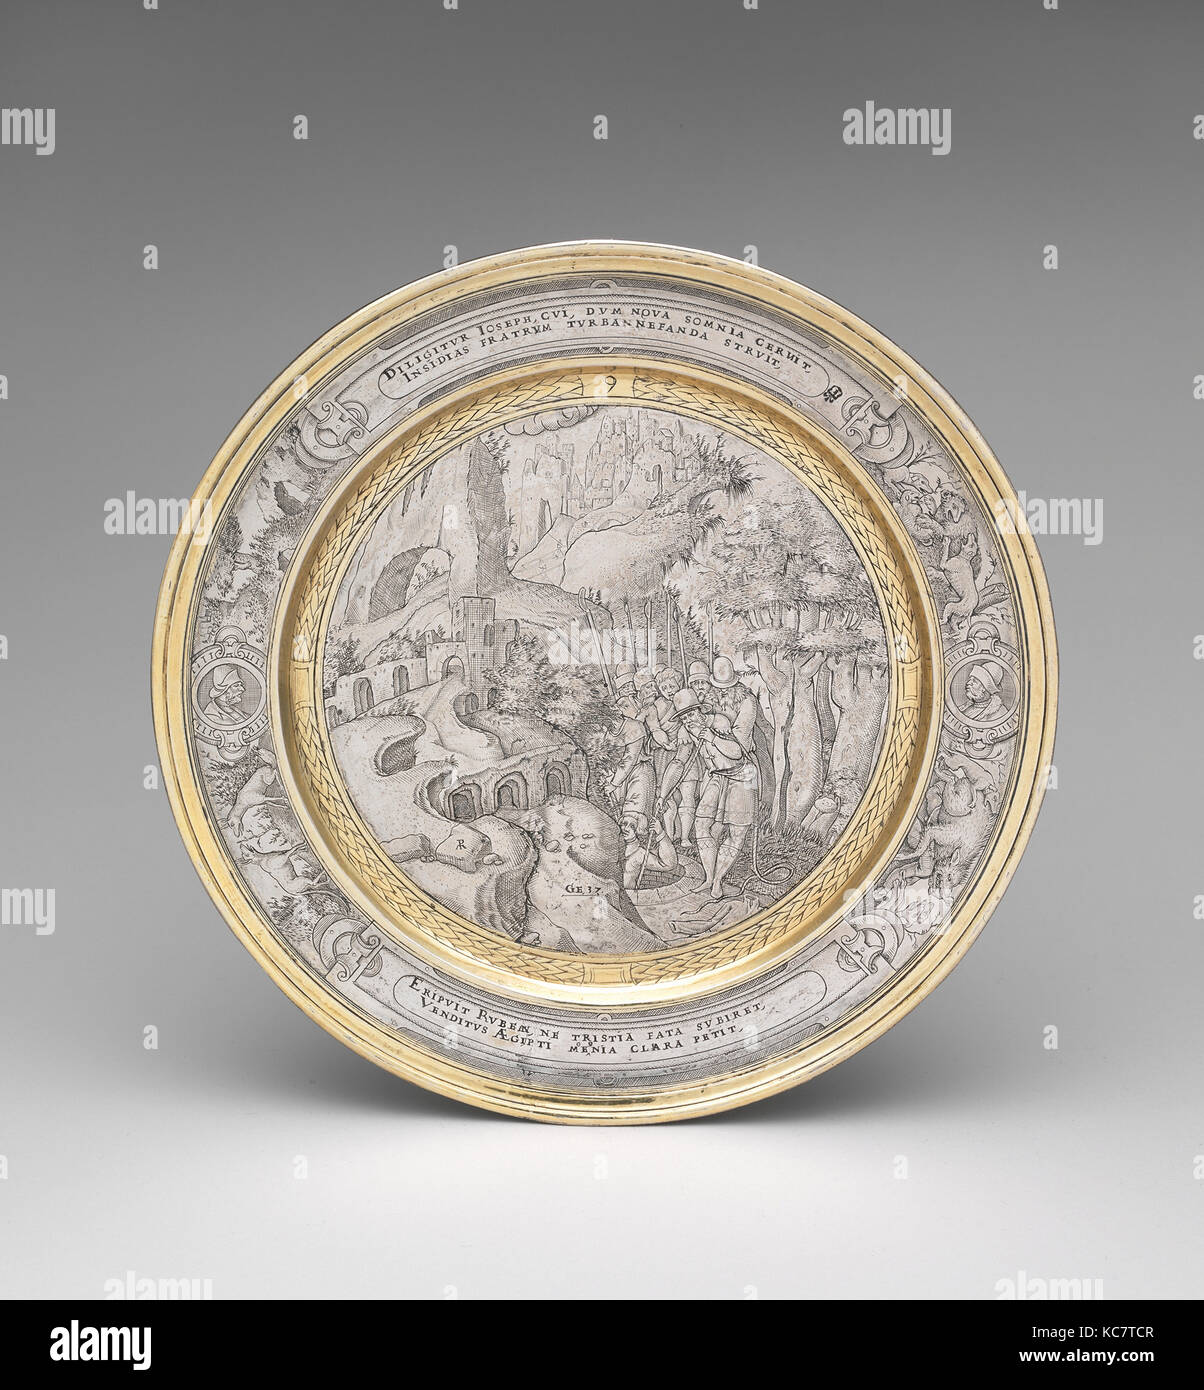 Giuseppe abbassato in fossa, ca. 1567, probabilmente inglesi, argento, pacco dorato, complessiva (conferma): 5/8 x 7 3/4 in., 7 oz. 17 dwt Foto Stock